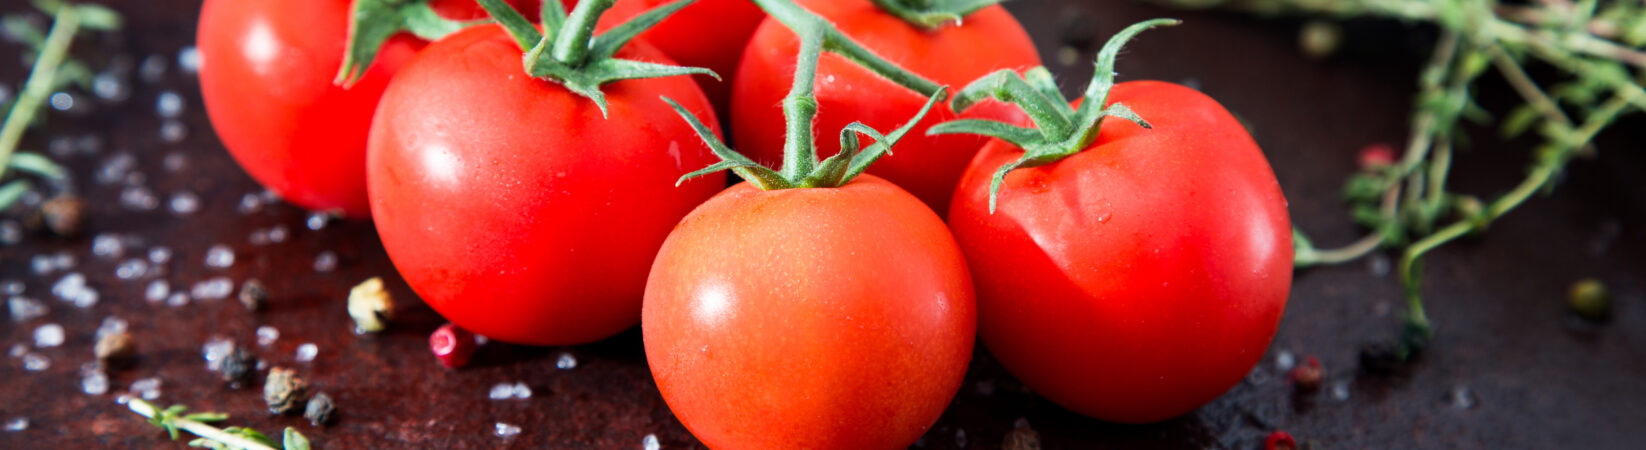 Tomaten- Mehr des Anti-Aging-Stoffs Lycopin durchs Einkochen?